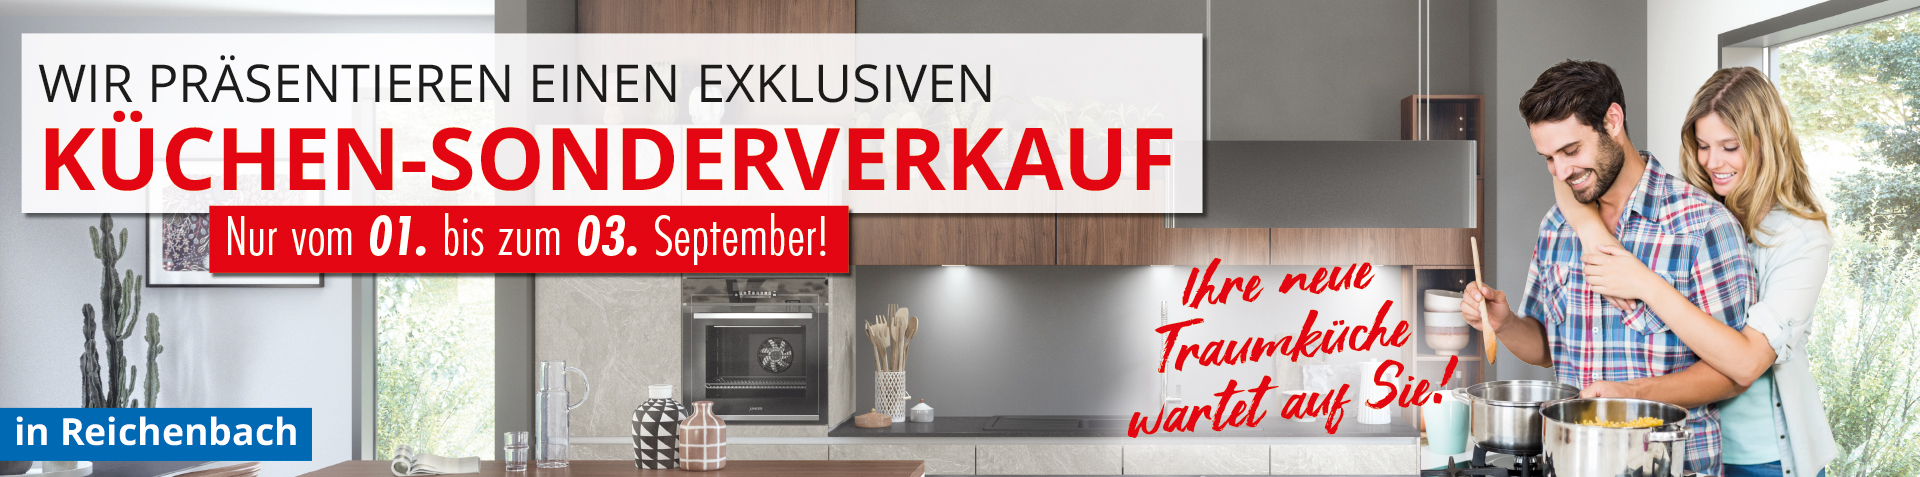 Küchen-Sonderverkauf in Reichenbach vom 01. - 03. September